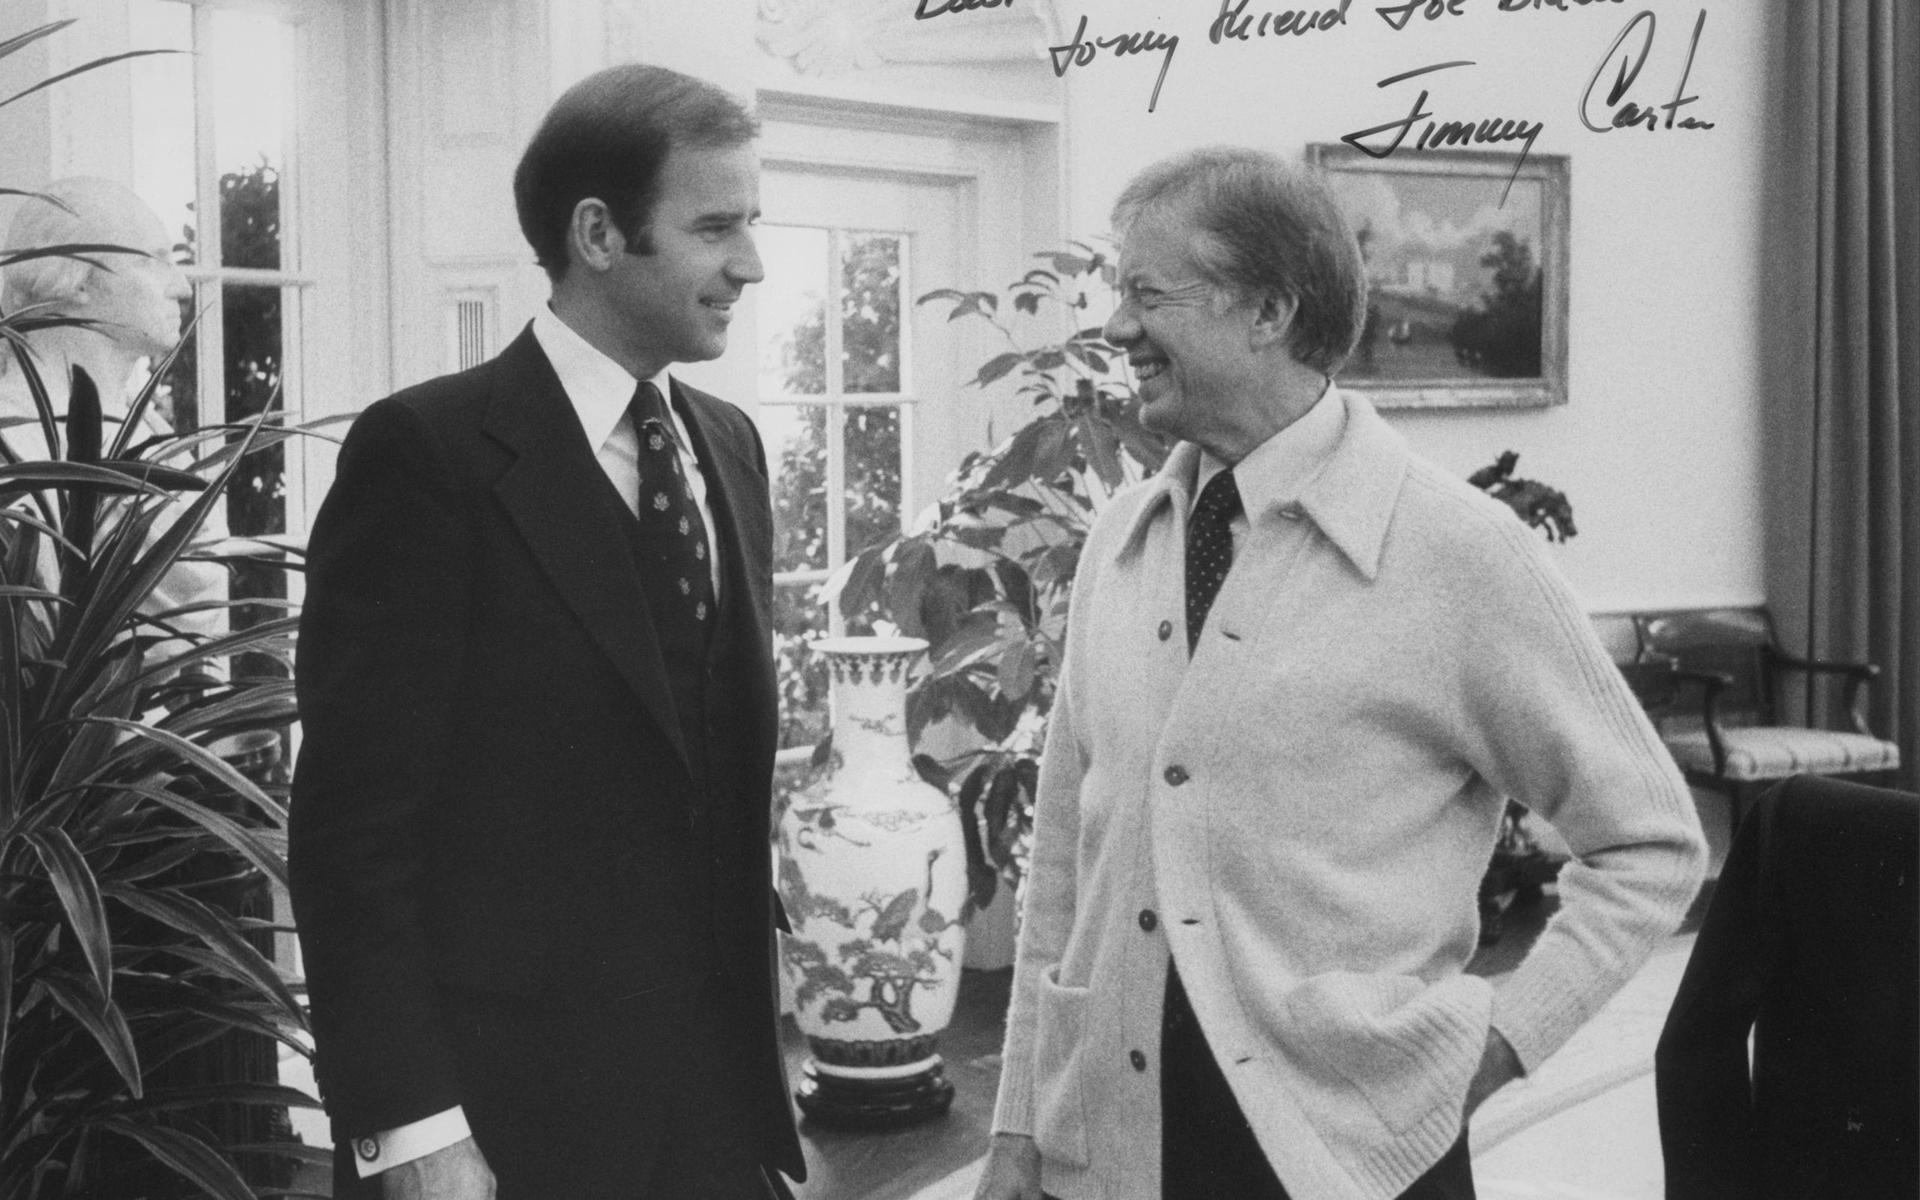 Dåvarande senatorn Joe Biden med dåvarande president Jimmy Carter i Ovala rummet i Vita huset.